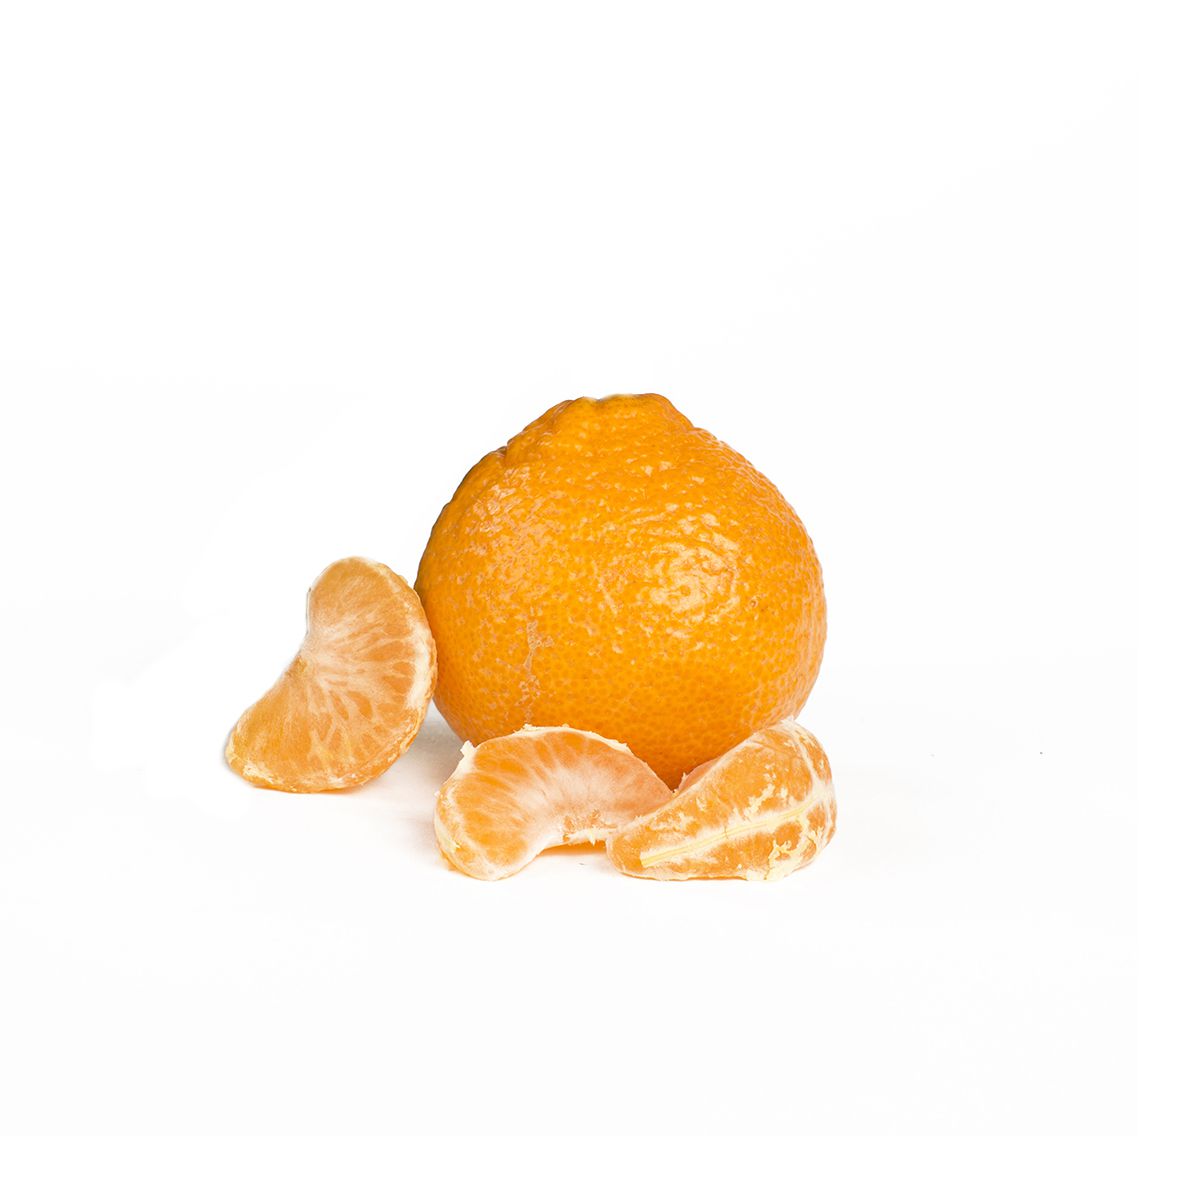 Rising C Ranches Mini Me Mandarin Oranges 3 LB